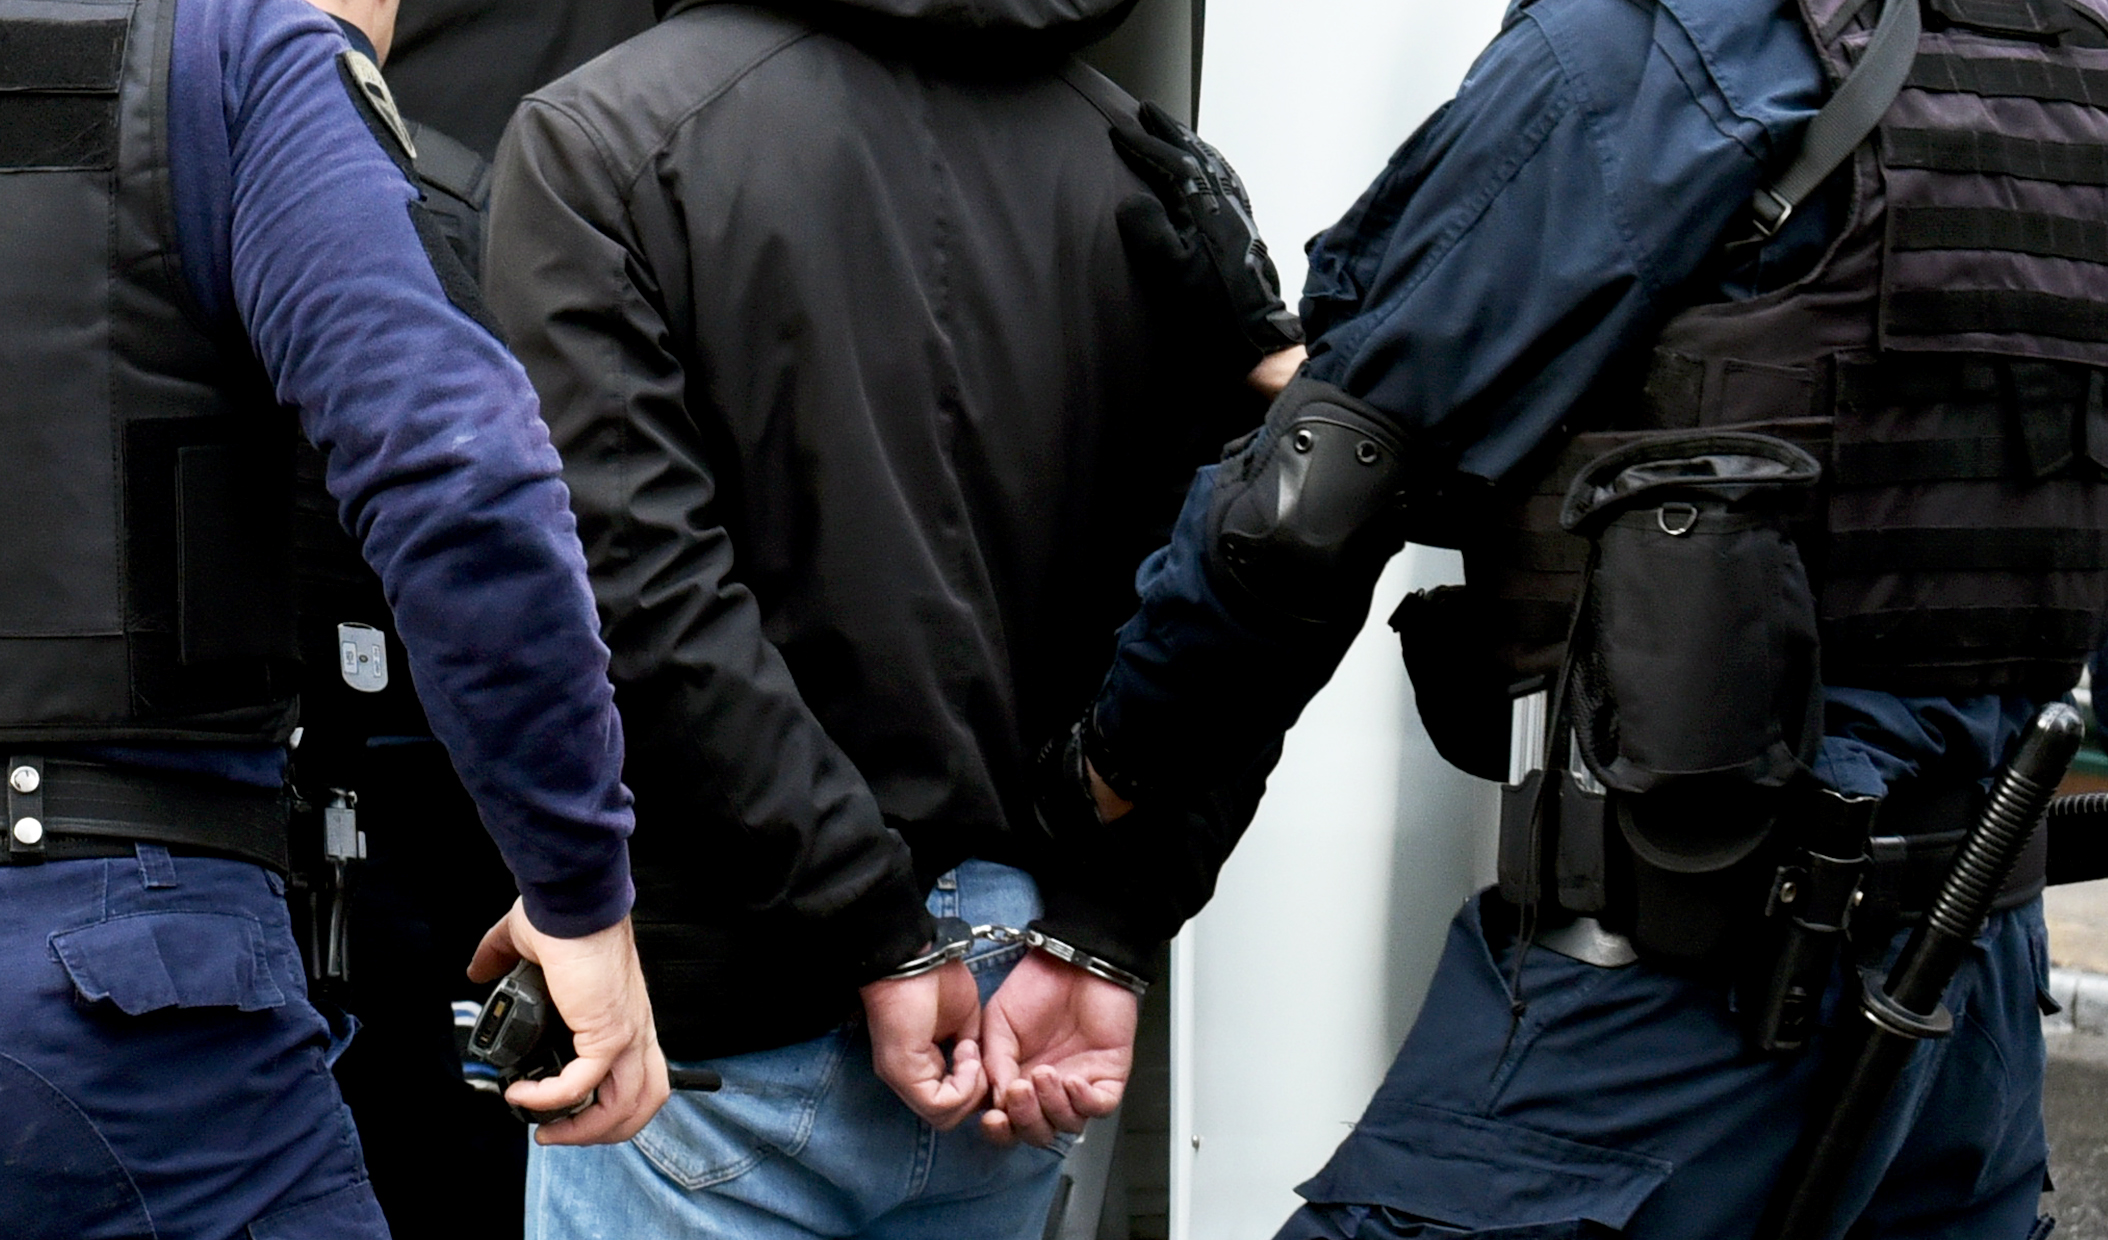 Θεσσαλονίκη: Σύλληψη τεσσάρων ατόμων για εκκρεμείς καταδικαστικές αποφάσεις